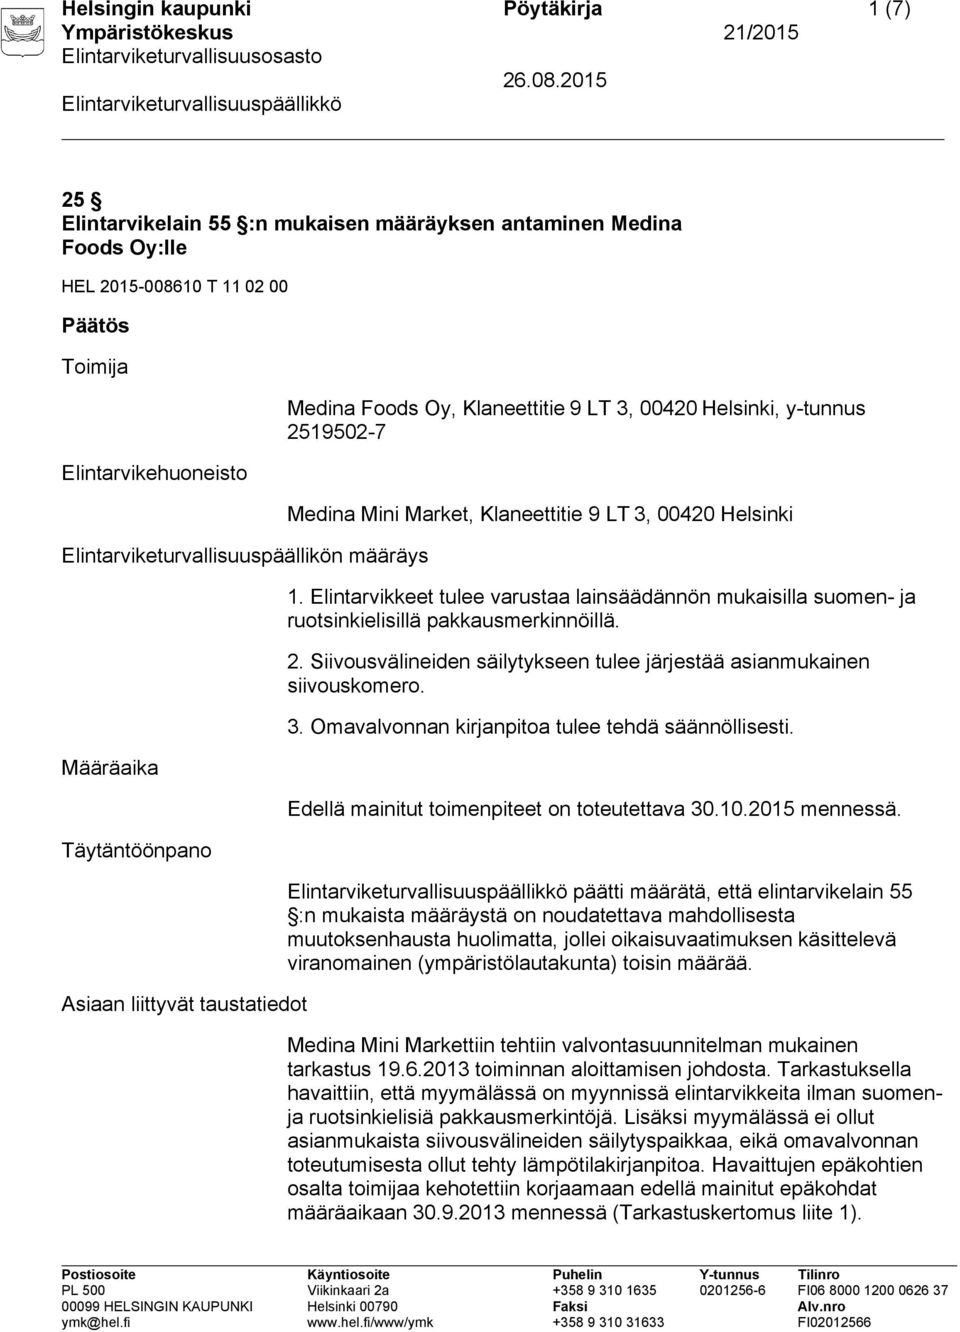 Klaneettitie 9 LT 3, 00420 Helsinki 1. Elintarvikkeet tulee varustaa lainsäädännön mukaisilla suomen- ja ruotsinkielisillä pakkausmerkinnöillä. 2.